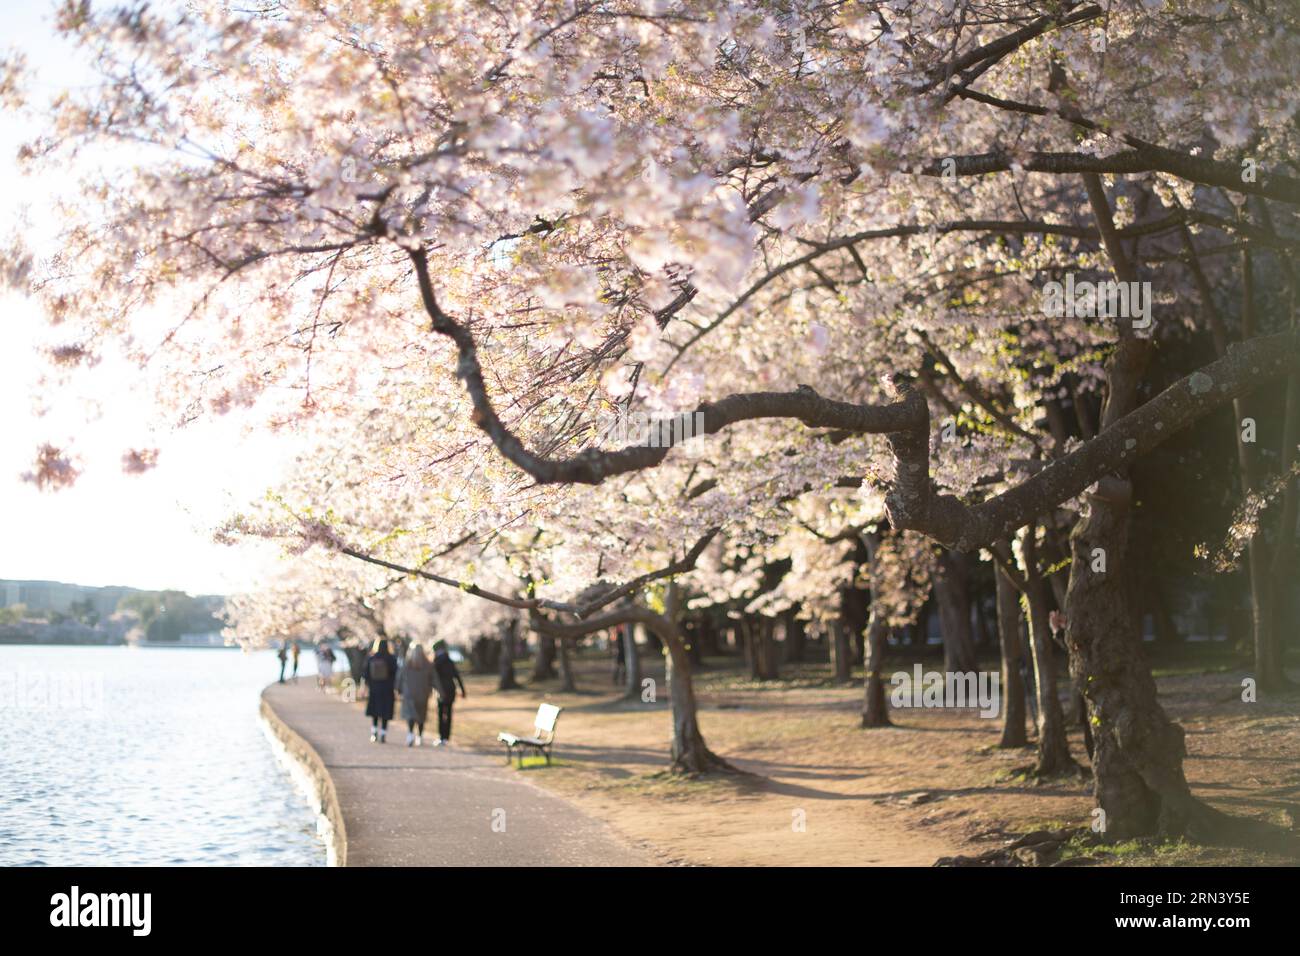 WASHINGTON DC, États-Unis — les cerisiers en pleine floraison enveloppent le bassin Tidal, marquant le début du printemps dans la capitale nationale. Cet événement annuel attire des milliers de personnes, symbolisant l'amitié durable entre les États-Unis et le Japon, un cadeau de Tokyo en 1912. Banque D'Images